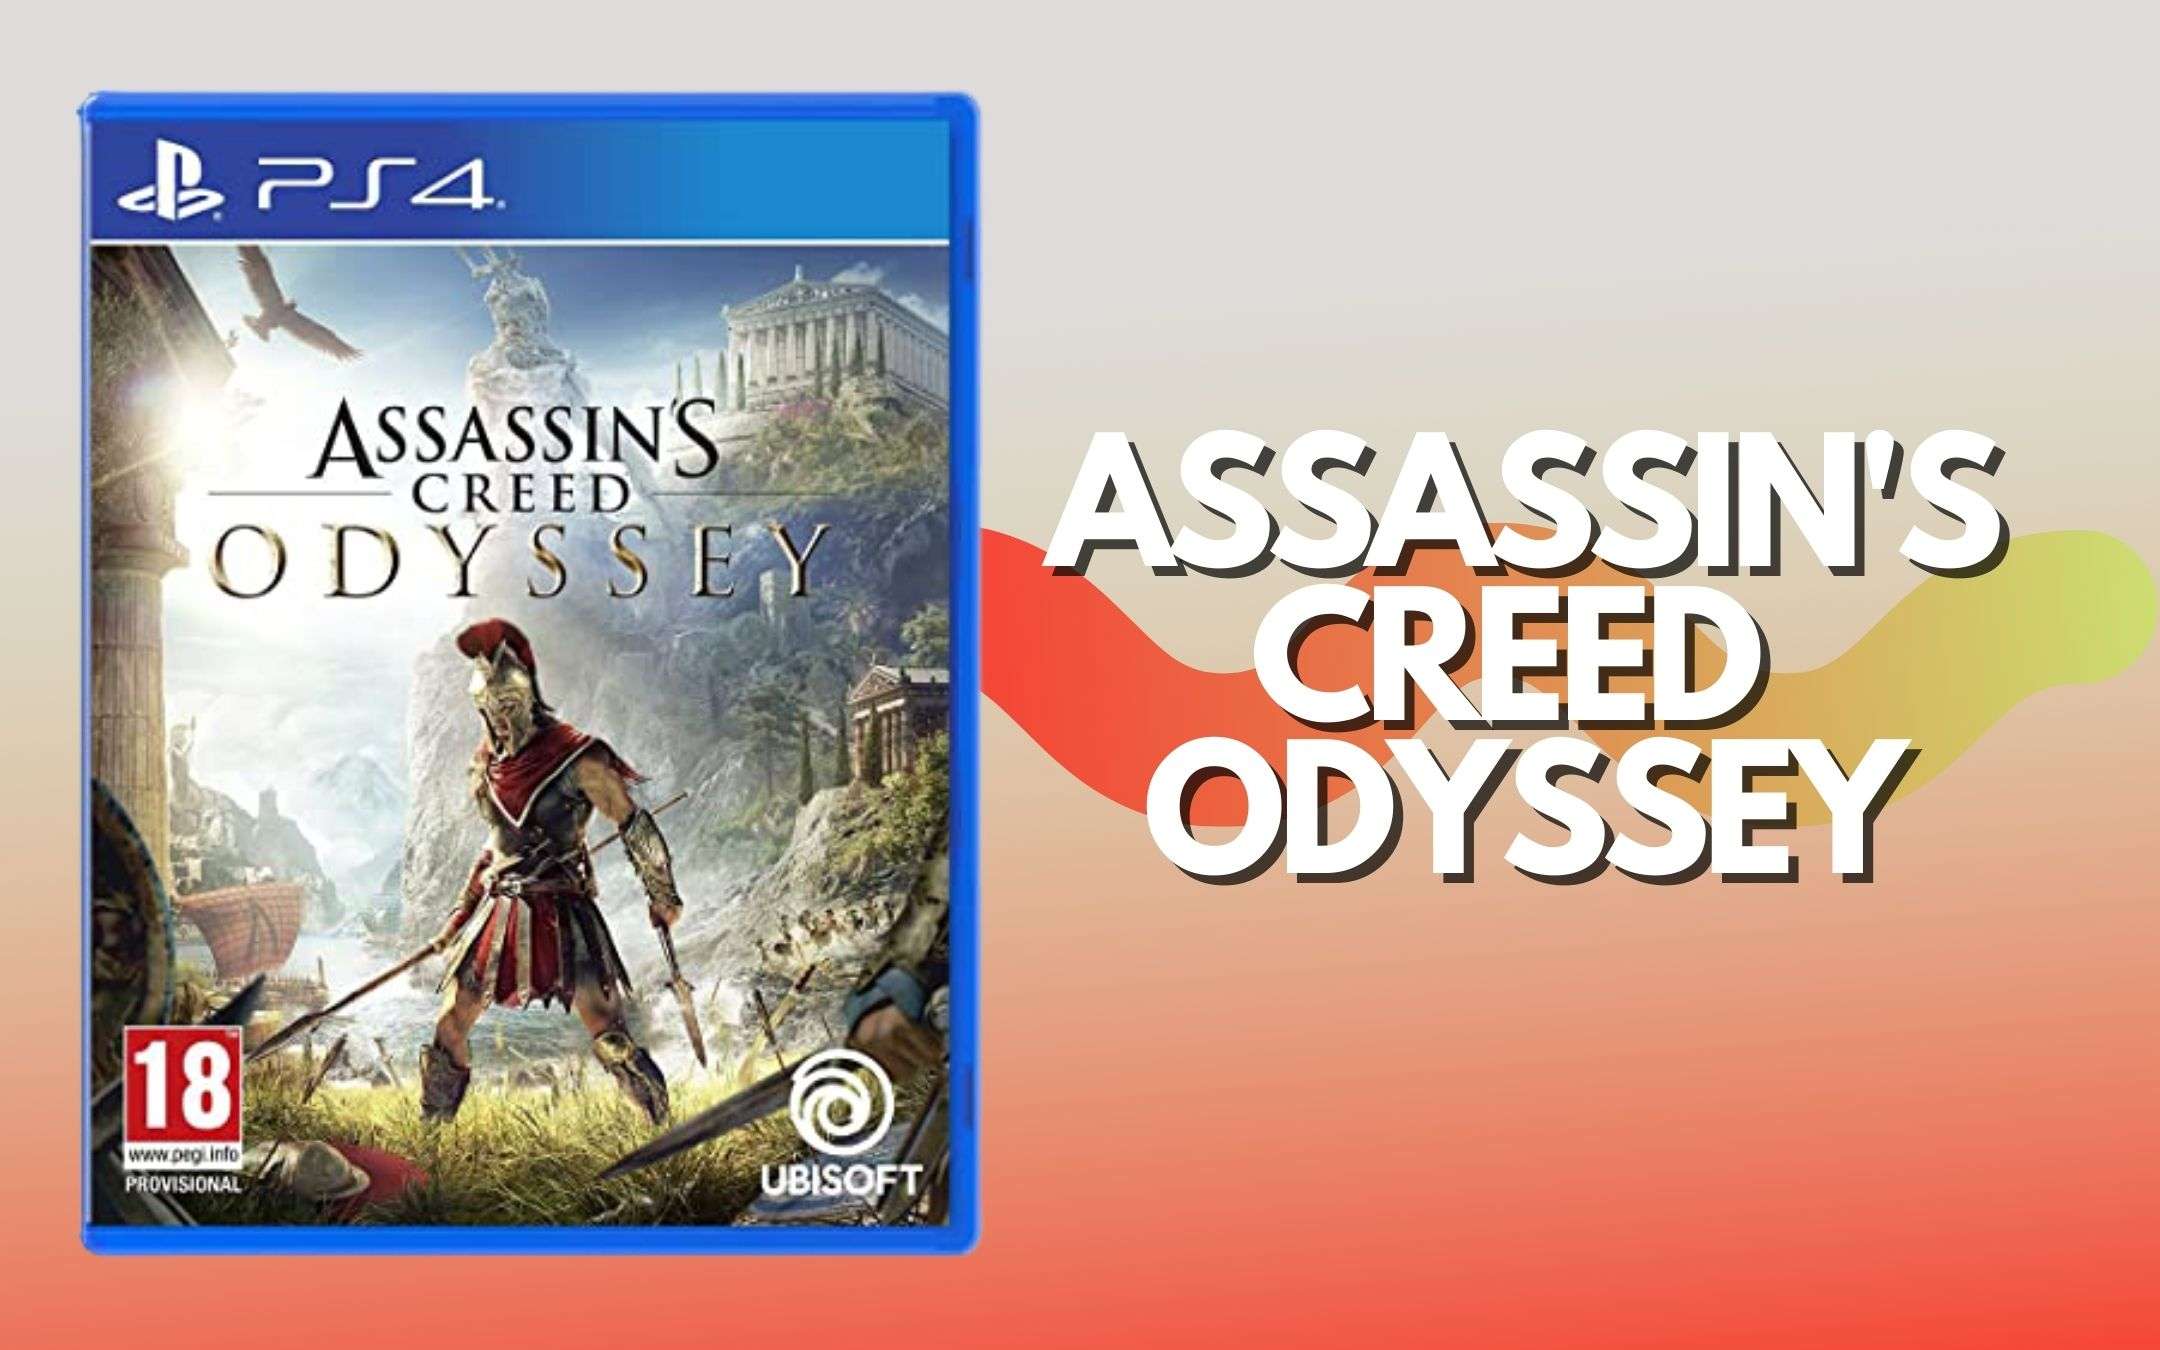 Assassin'S Creed Odyssey a metà prezzo per PS4